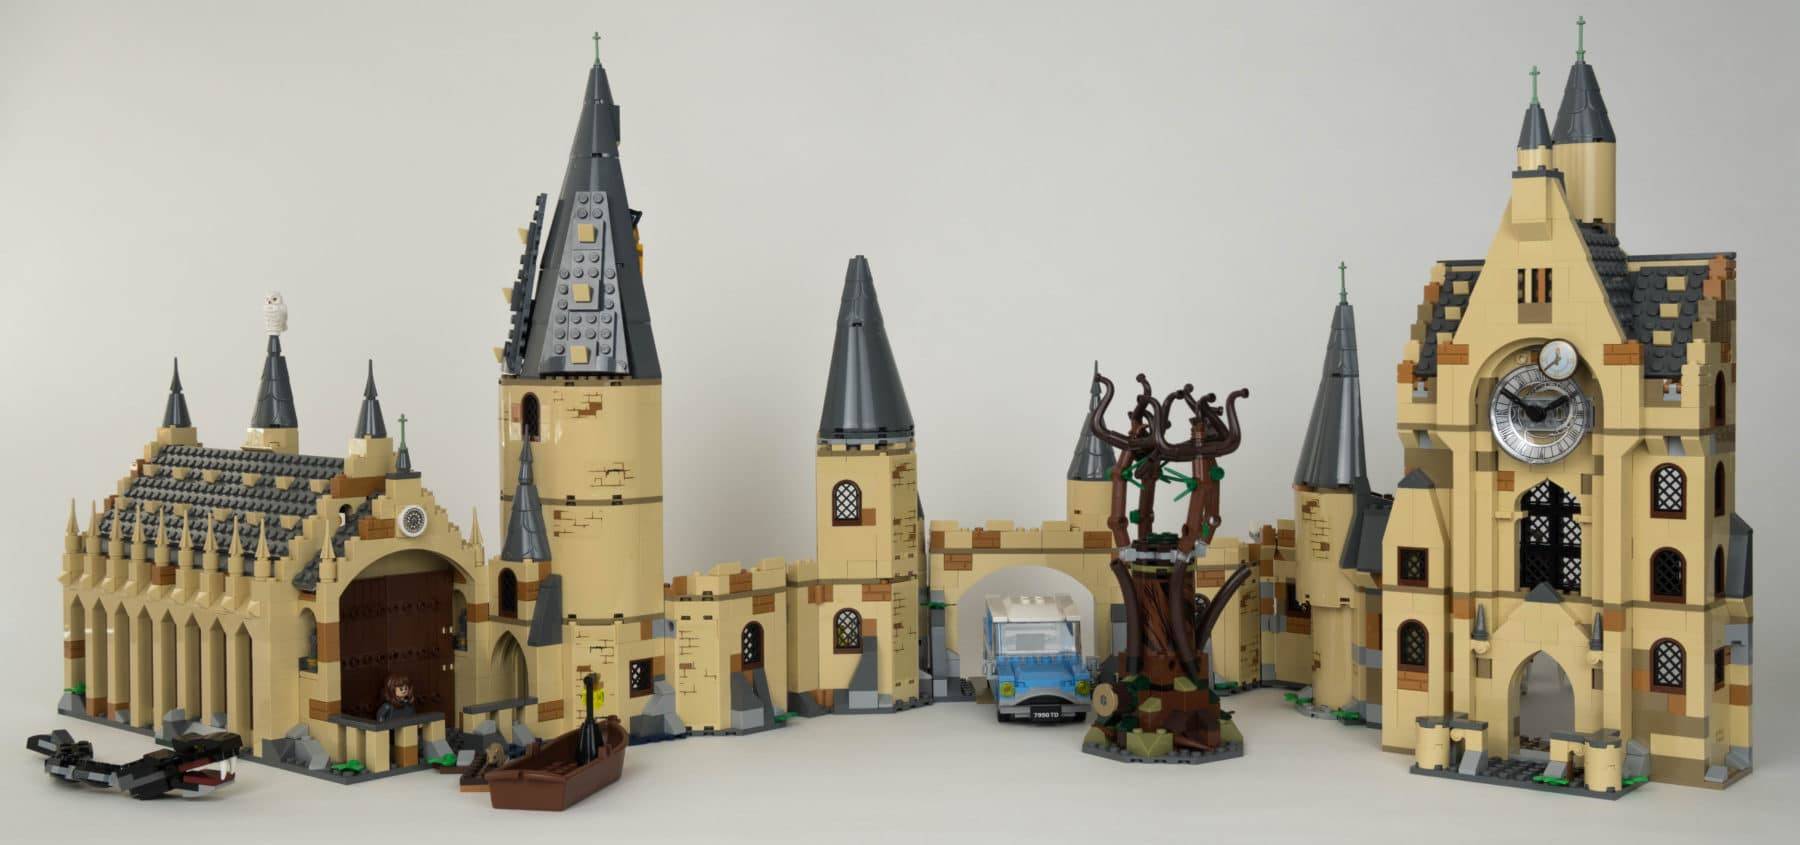 LEGO Harry Potter  I migliori set per riprodurre la Scuola di Magia di  Hogwarts - Tom's Hardware